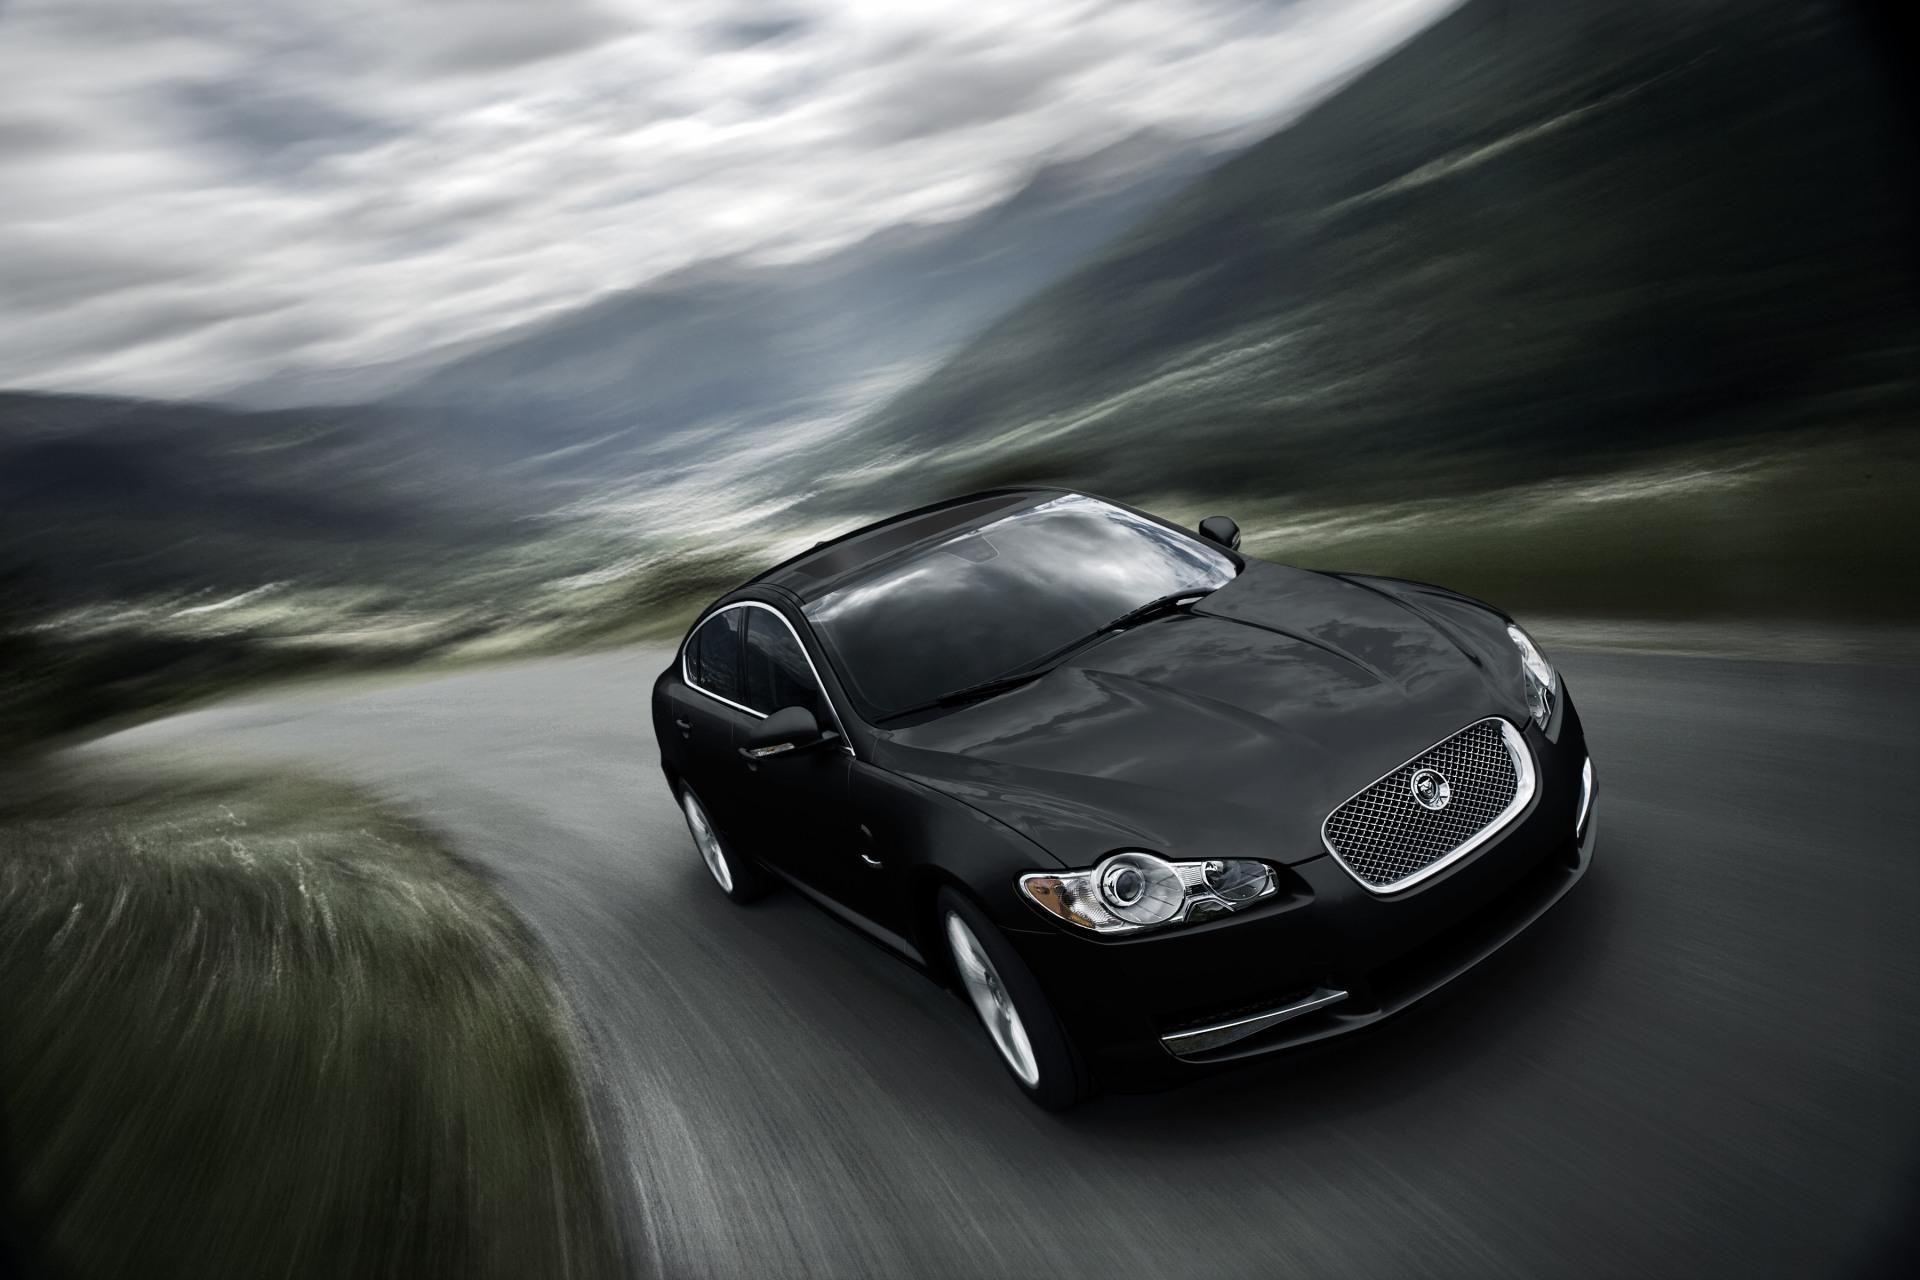 Jaguar Car HD Wallpapers - Top Free Jaguar Car HD ...